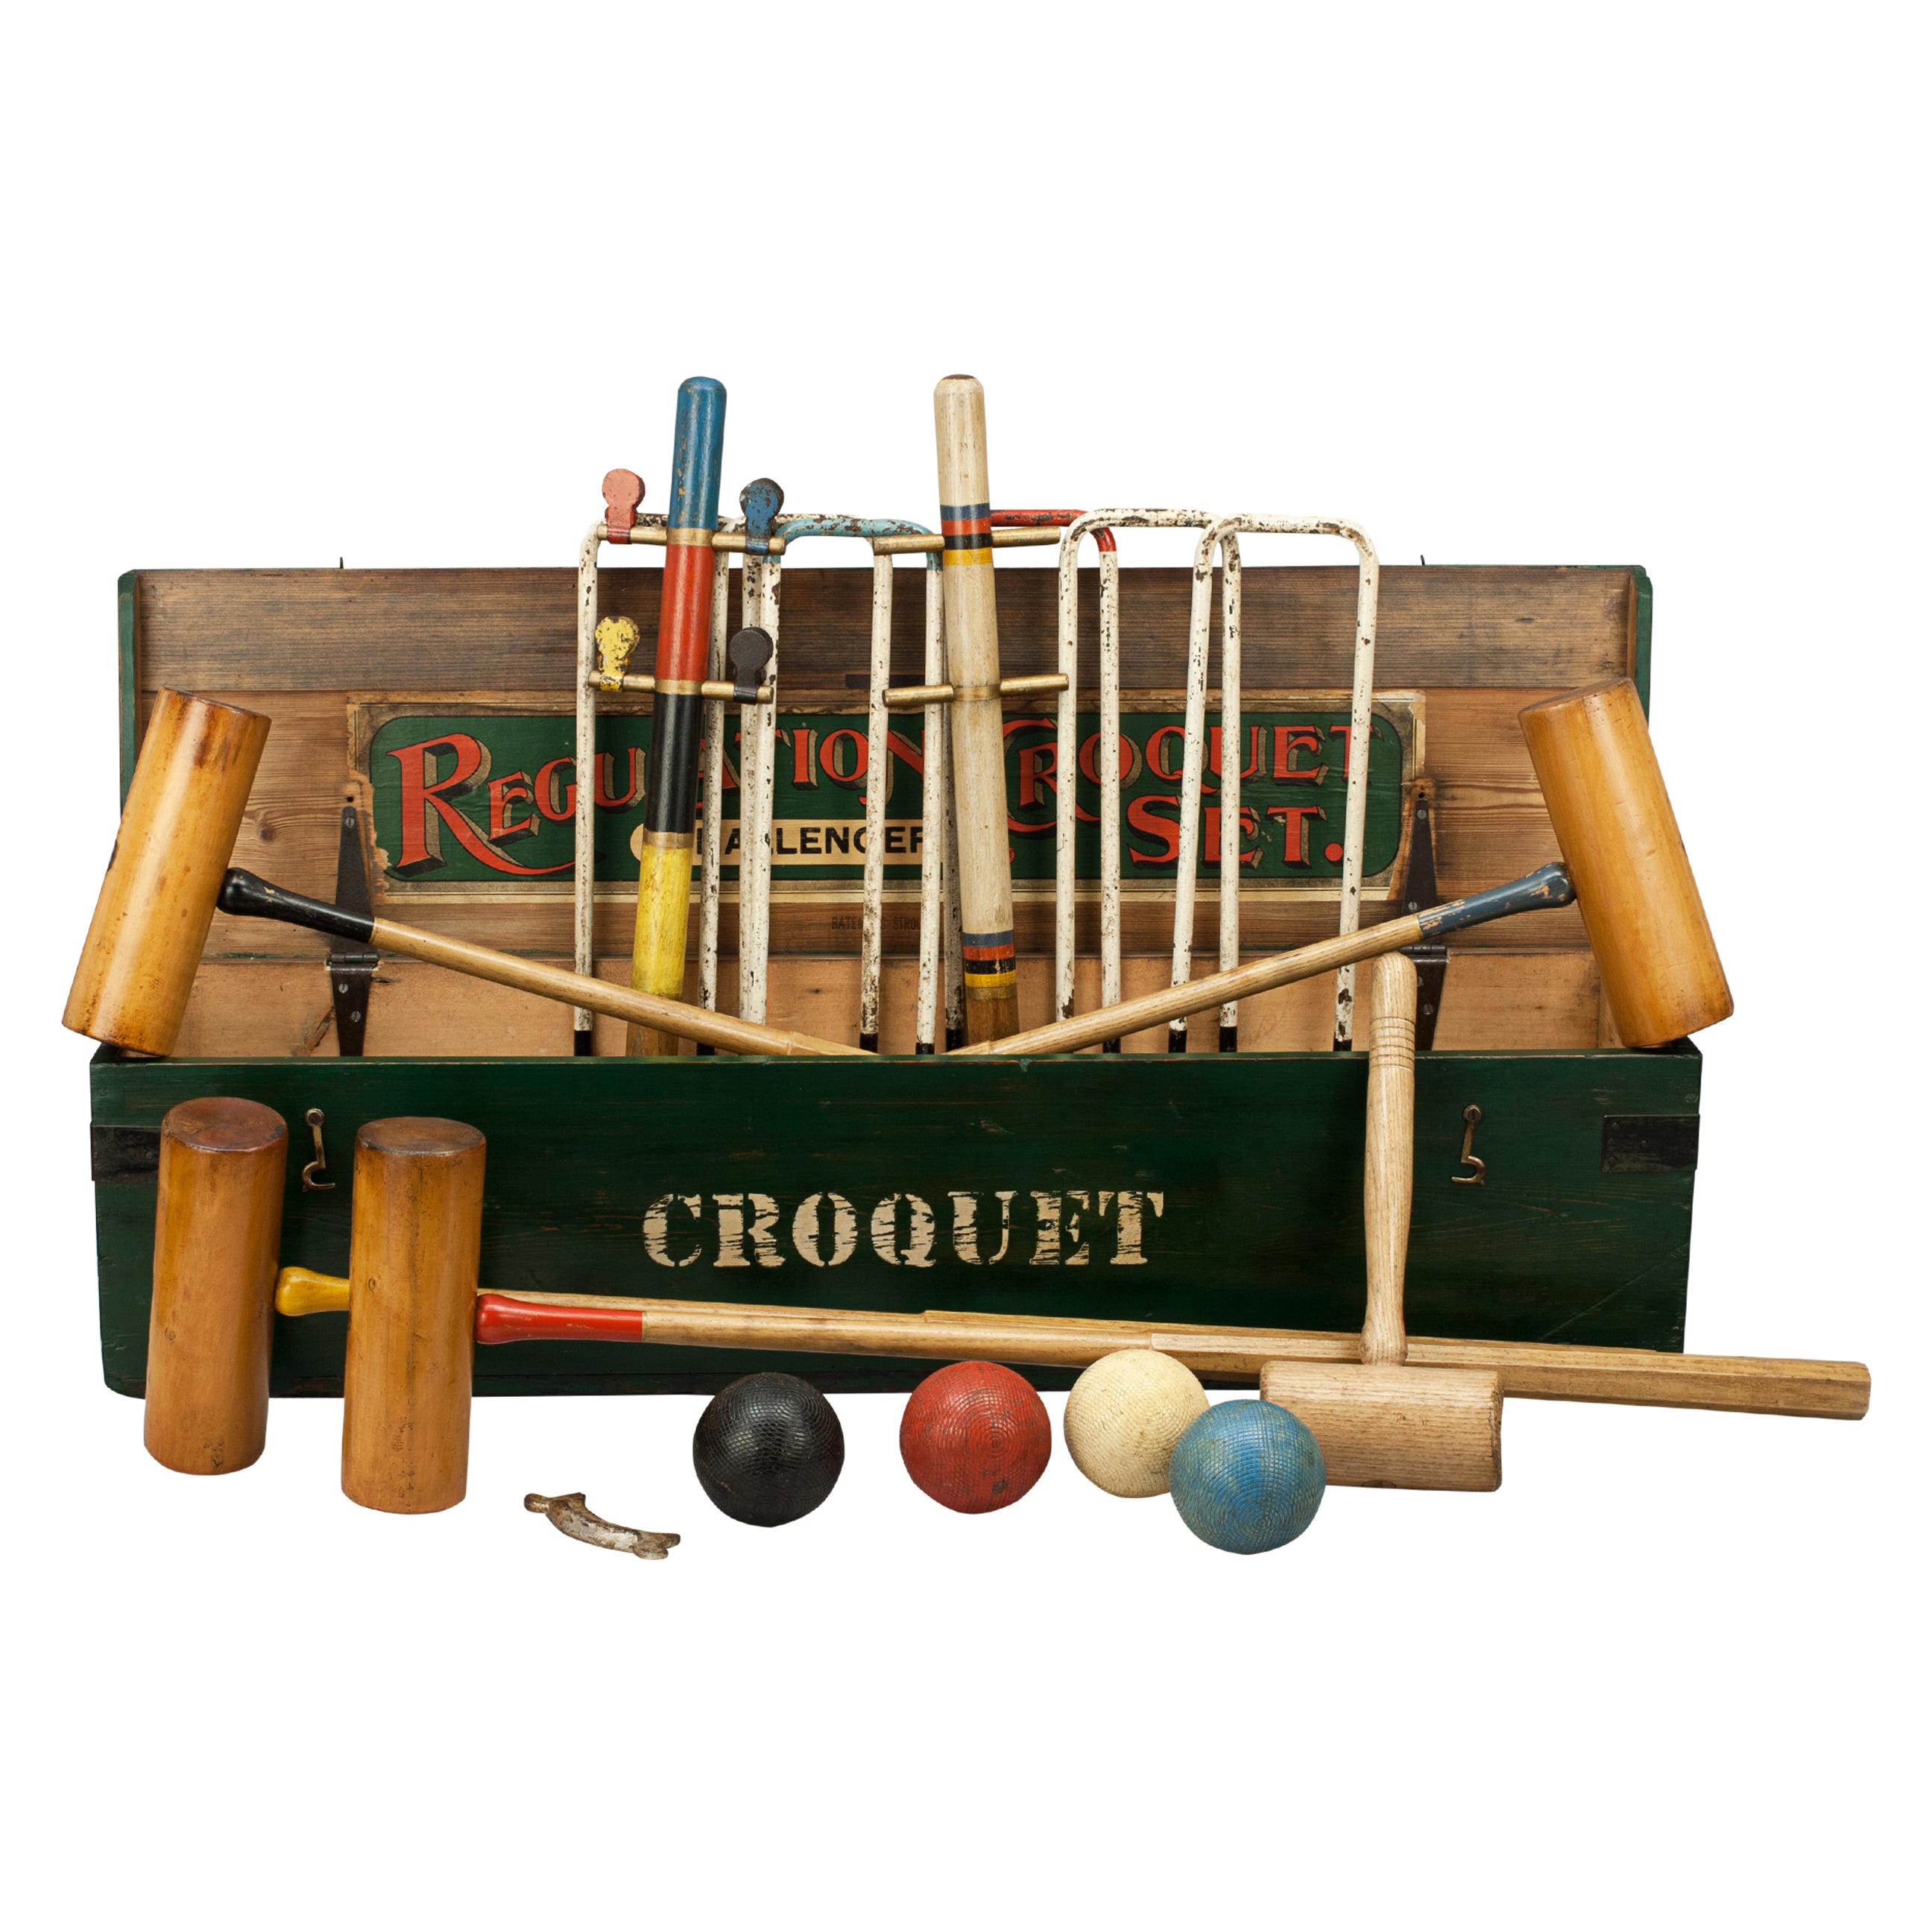 Bateman Stroud Regulation Croquet Set in Pine Box